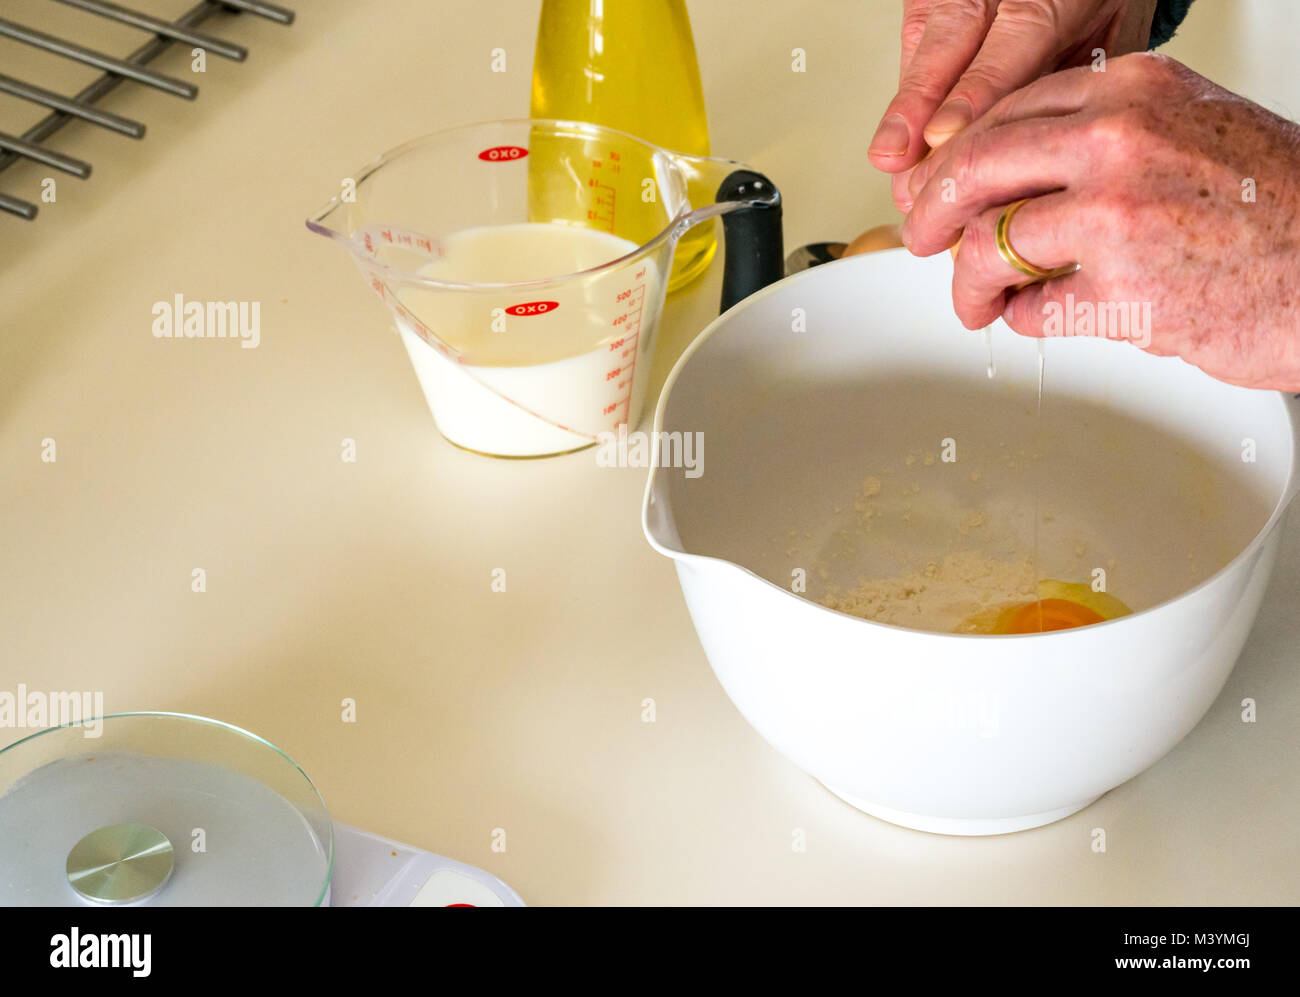 Battre au fouet le mélange de l'homme pour faire une pâte à crêpes pour Mardi Gras avec la farine, le lait, les œufs et l'huile dans une cuisine maison Banque D'Images